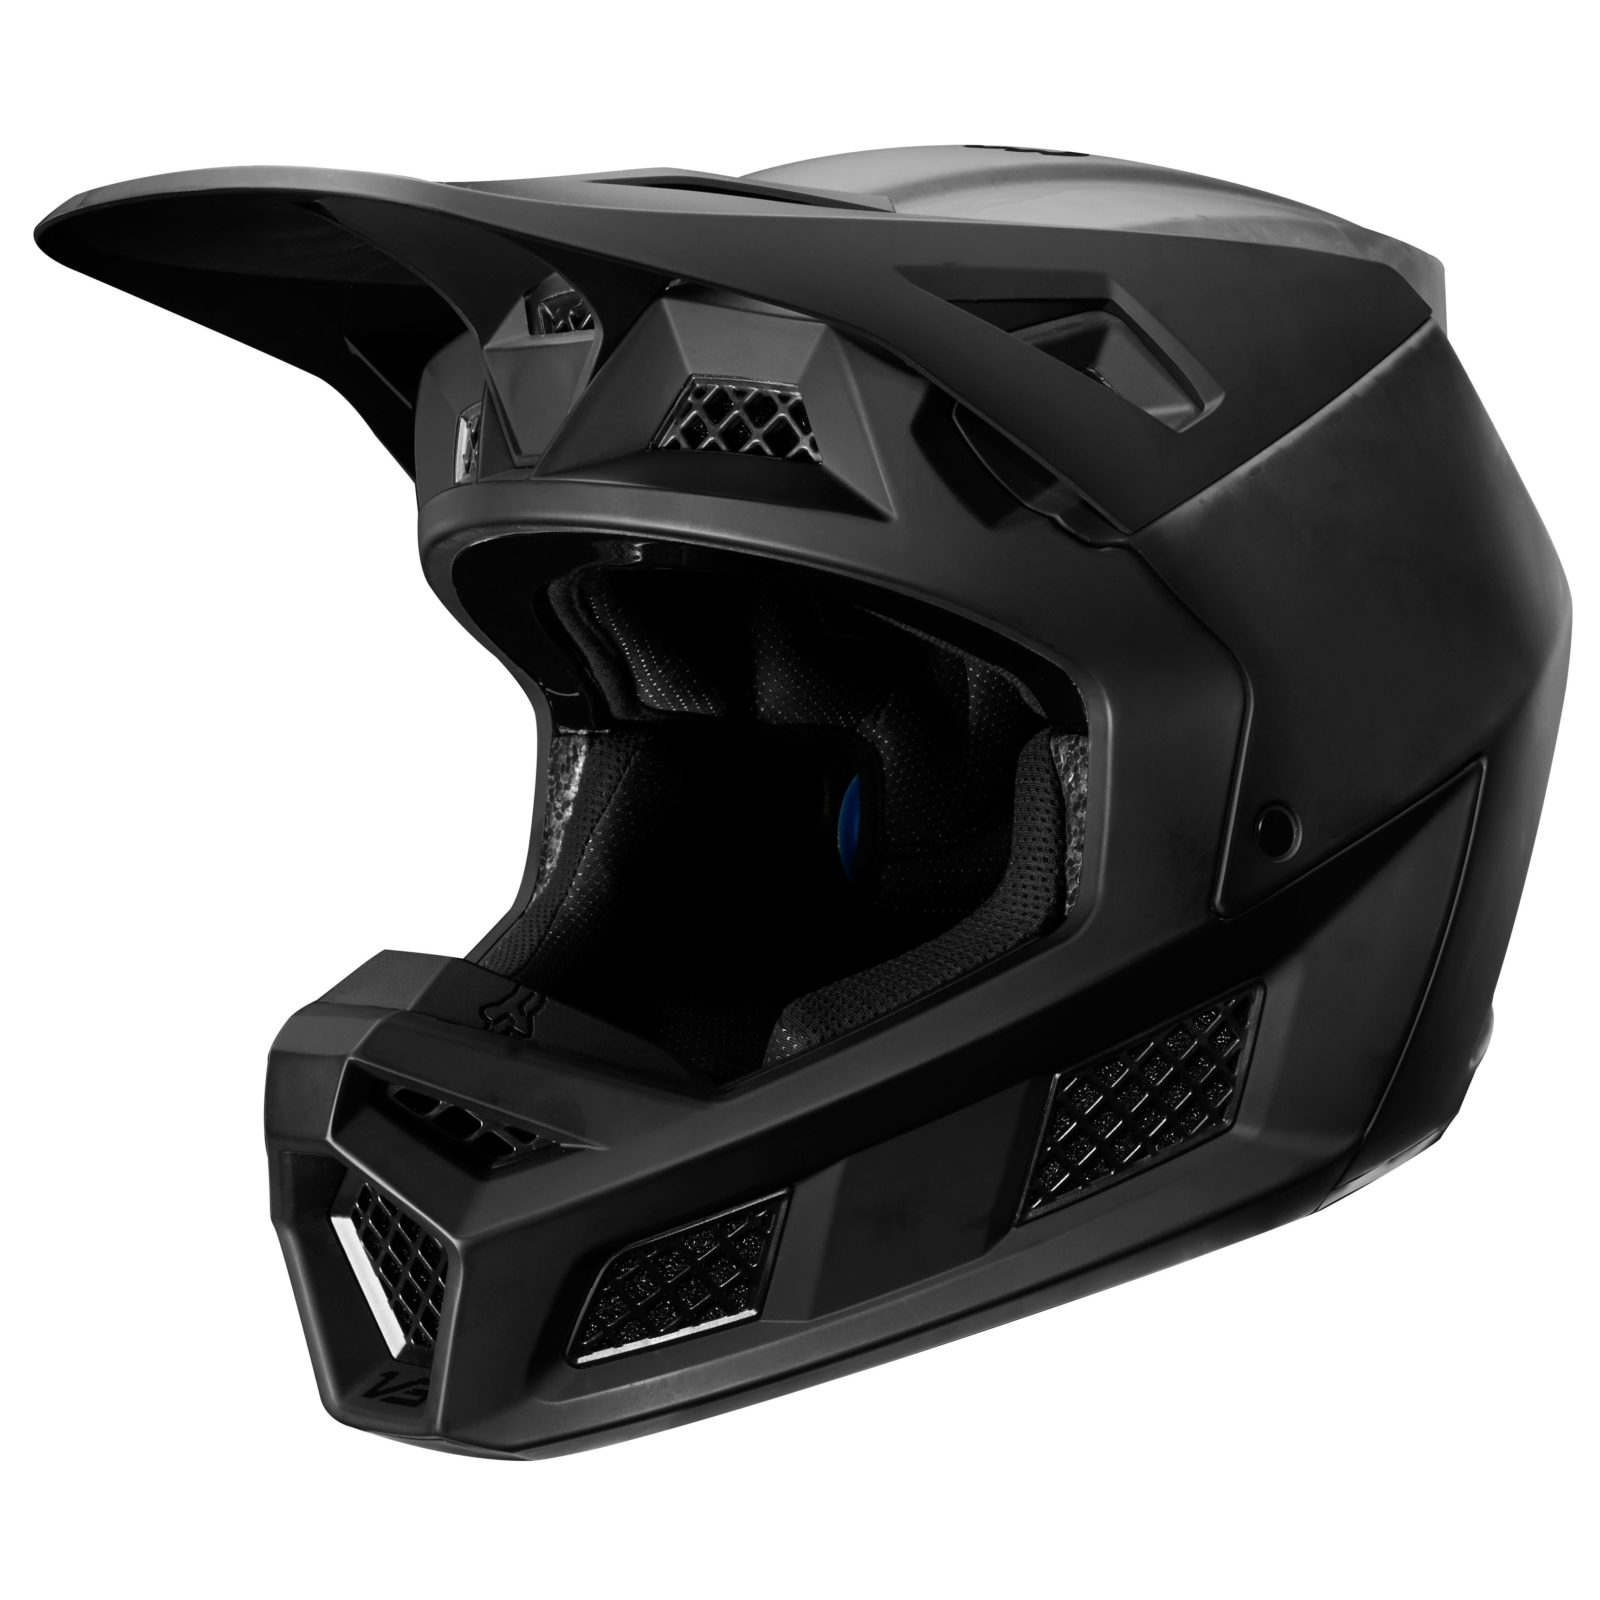 Le casque Fox Racing V3: la technologie au service de la performance !